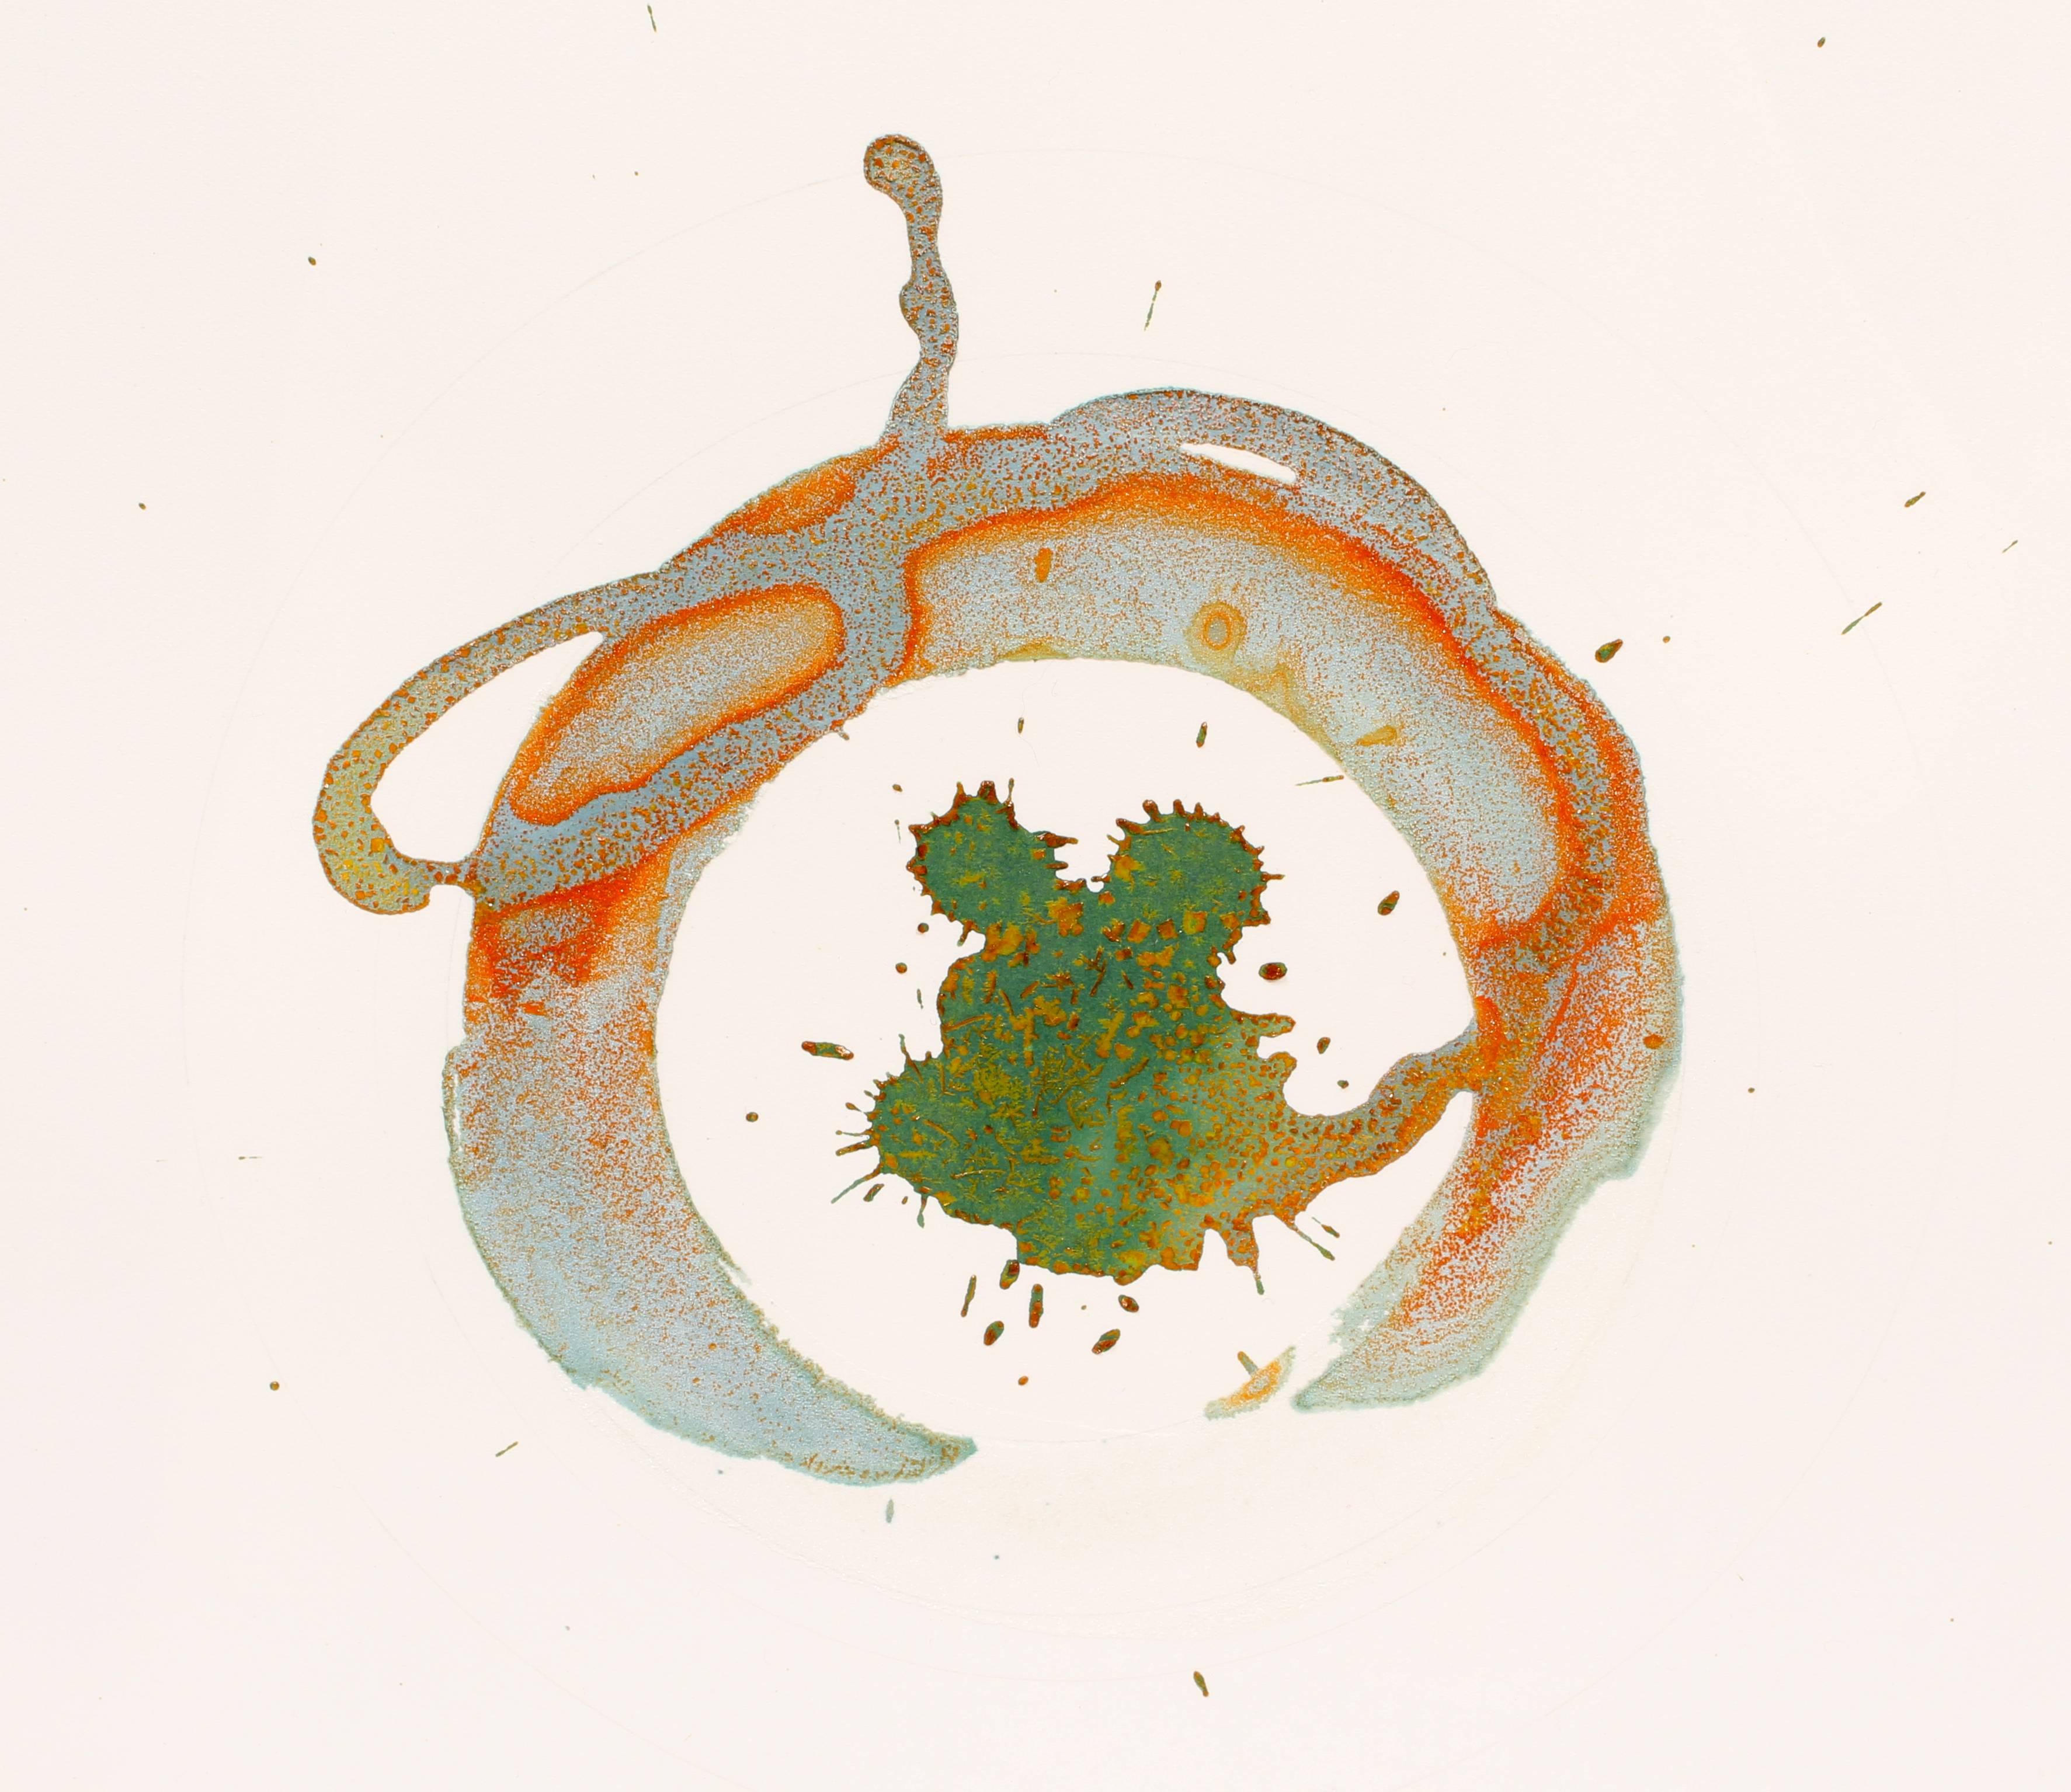 Une œuvre originale contemporaine en techniques mixtes de l'artiste conceptuel Jody Hanson.

Botanique, 2013, Ferricyanure de potassium et sel sur papier. Taille de l'œuvre : 16